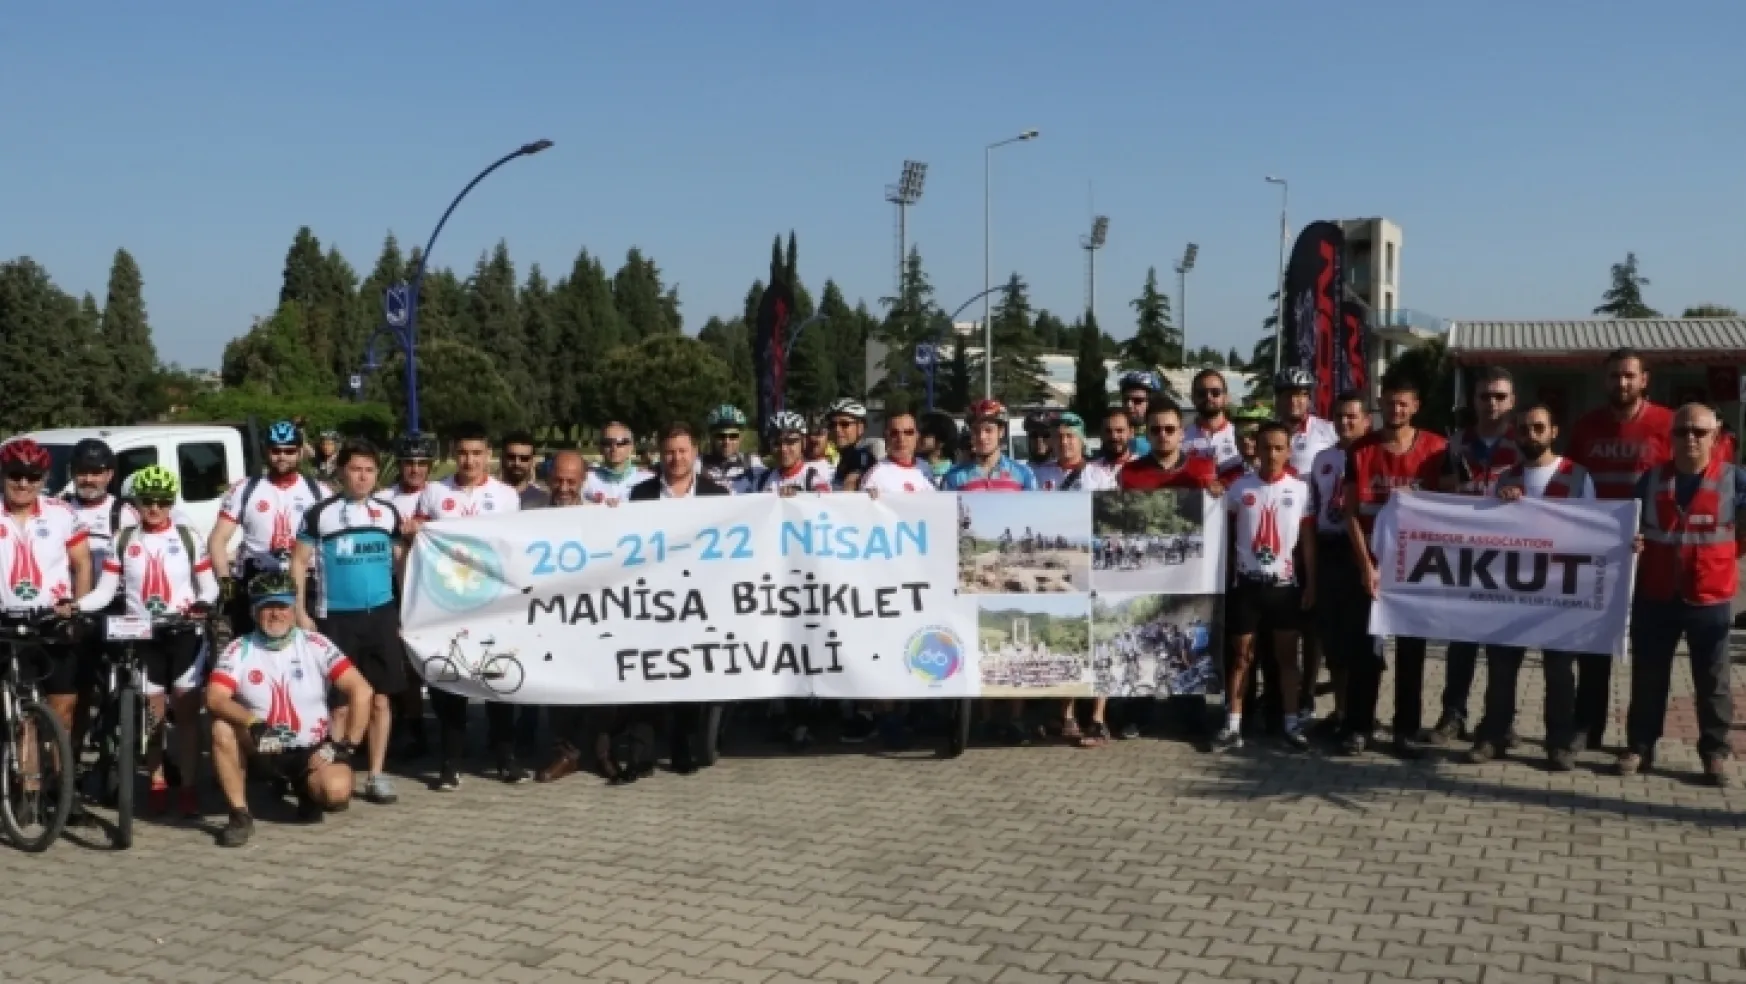 isiklet Festivali, Manisa Botanik Park'ından başladı